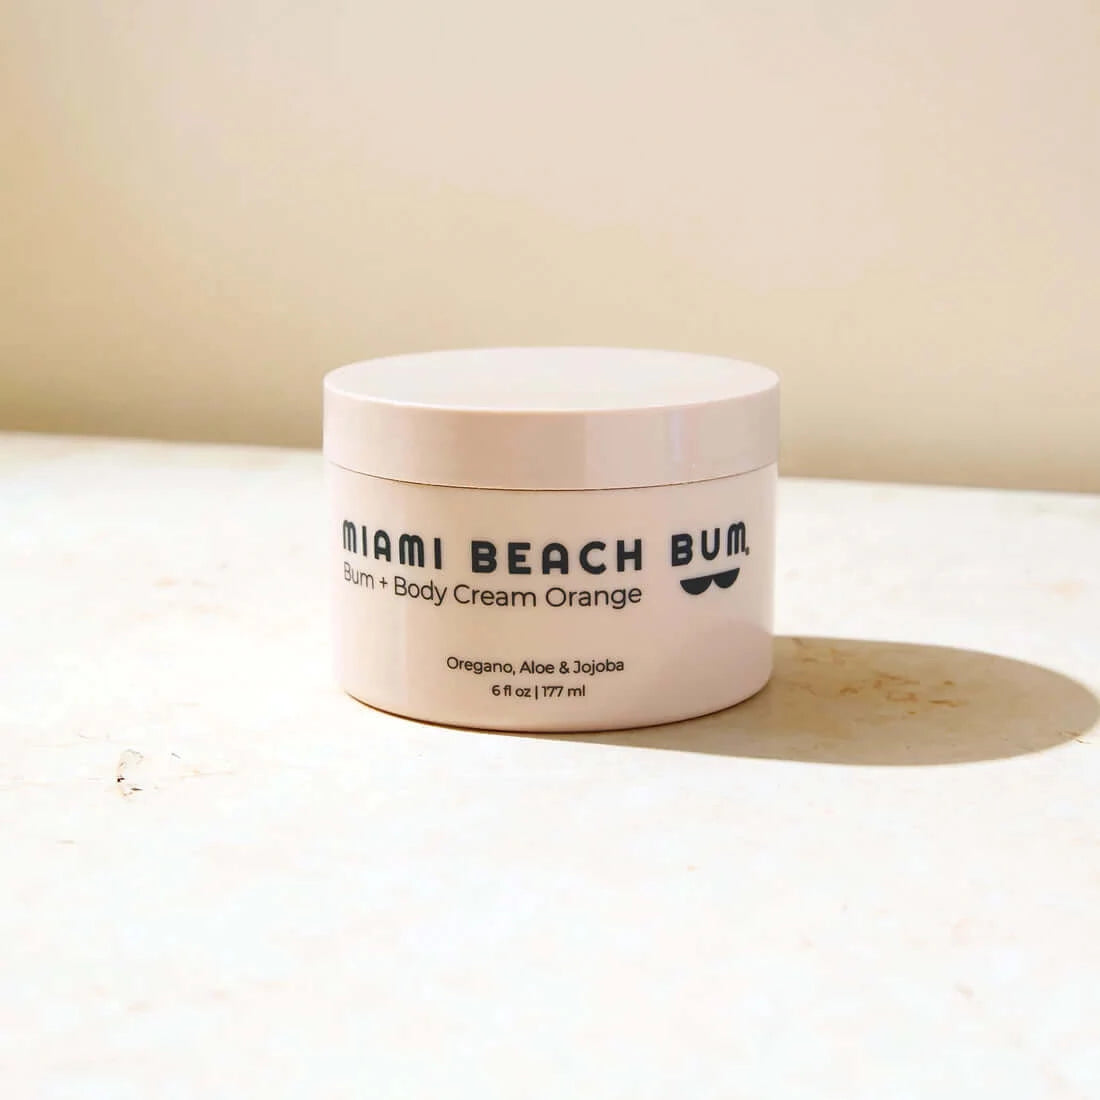 Miami Beach Bum - Bum + Body Cream